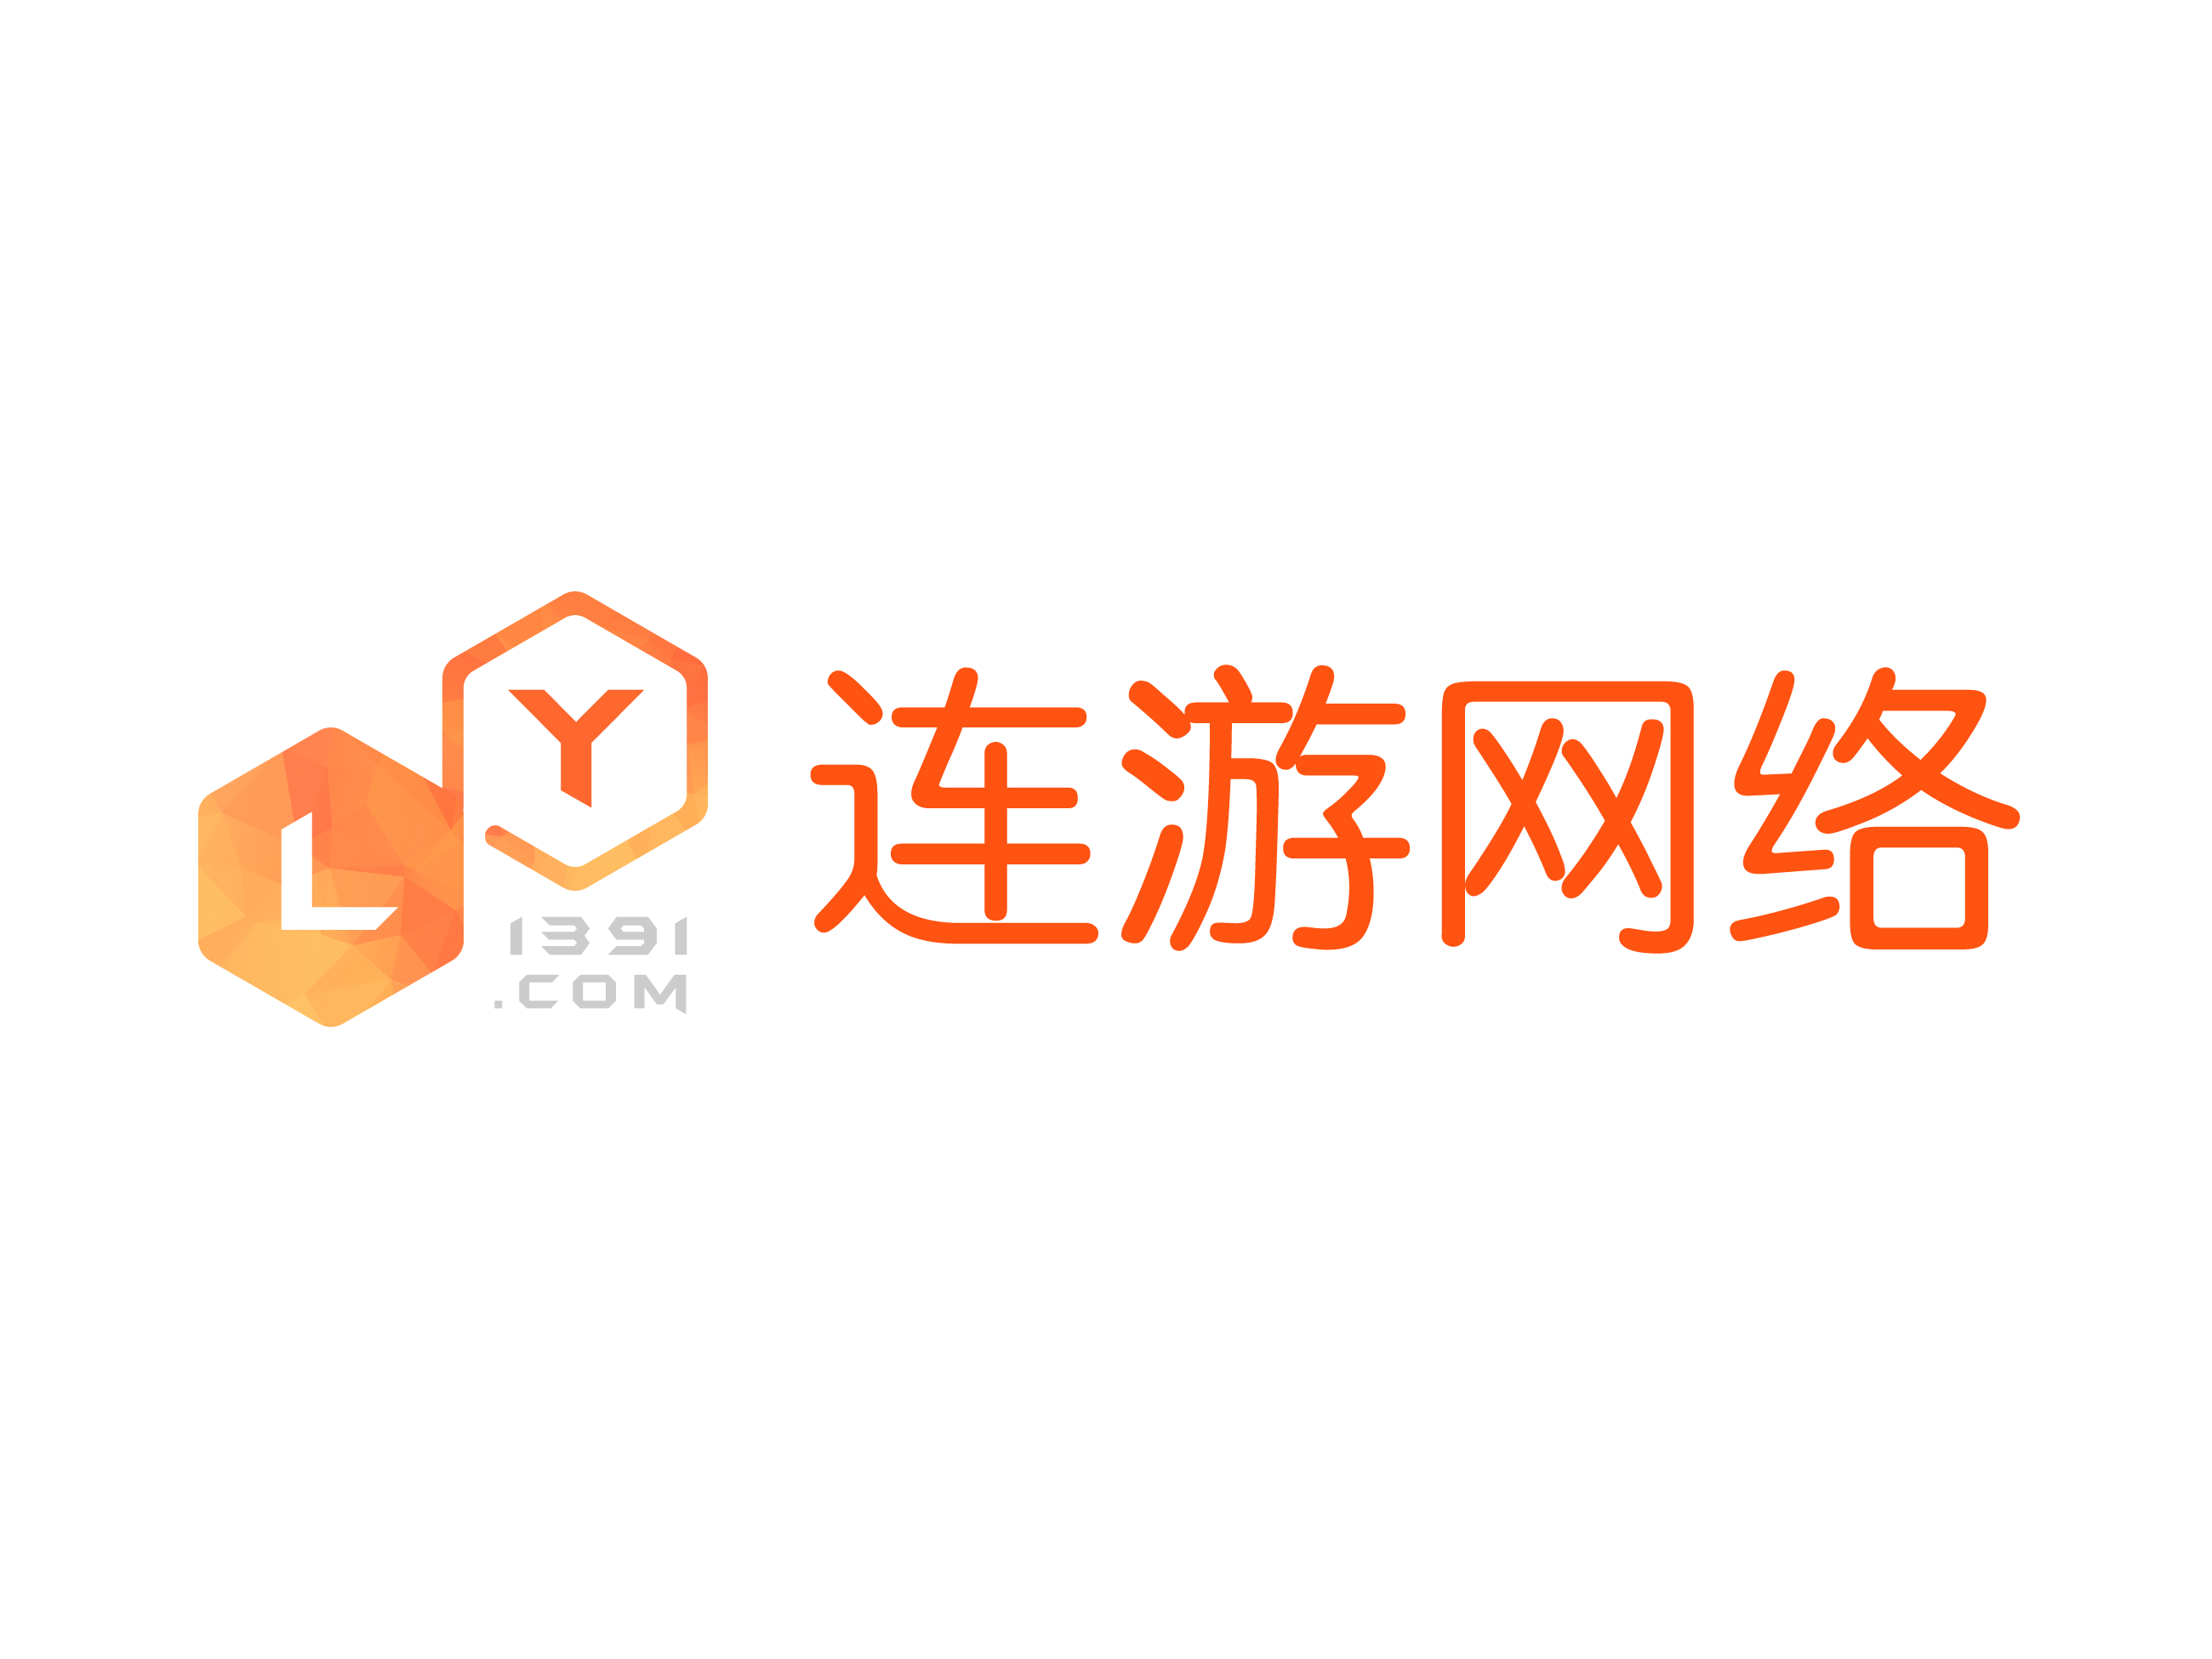 上海連游網路科技有限公司